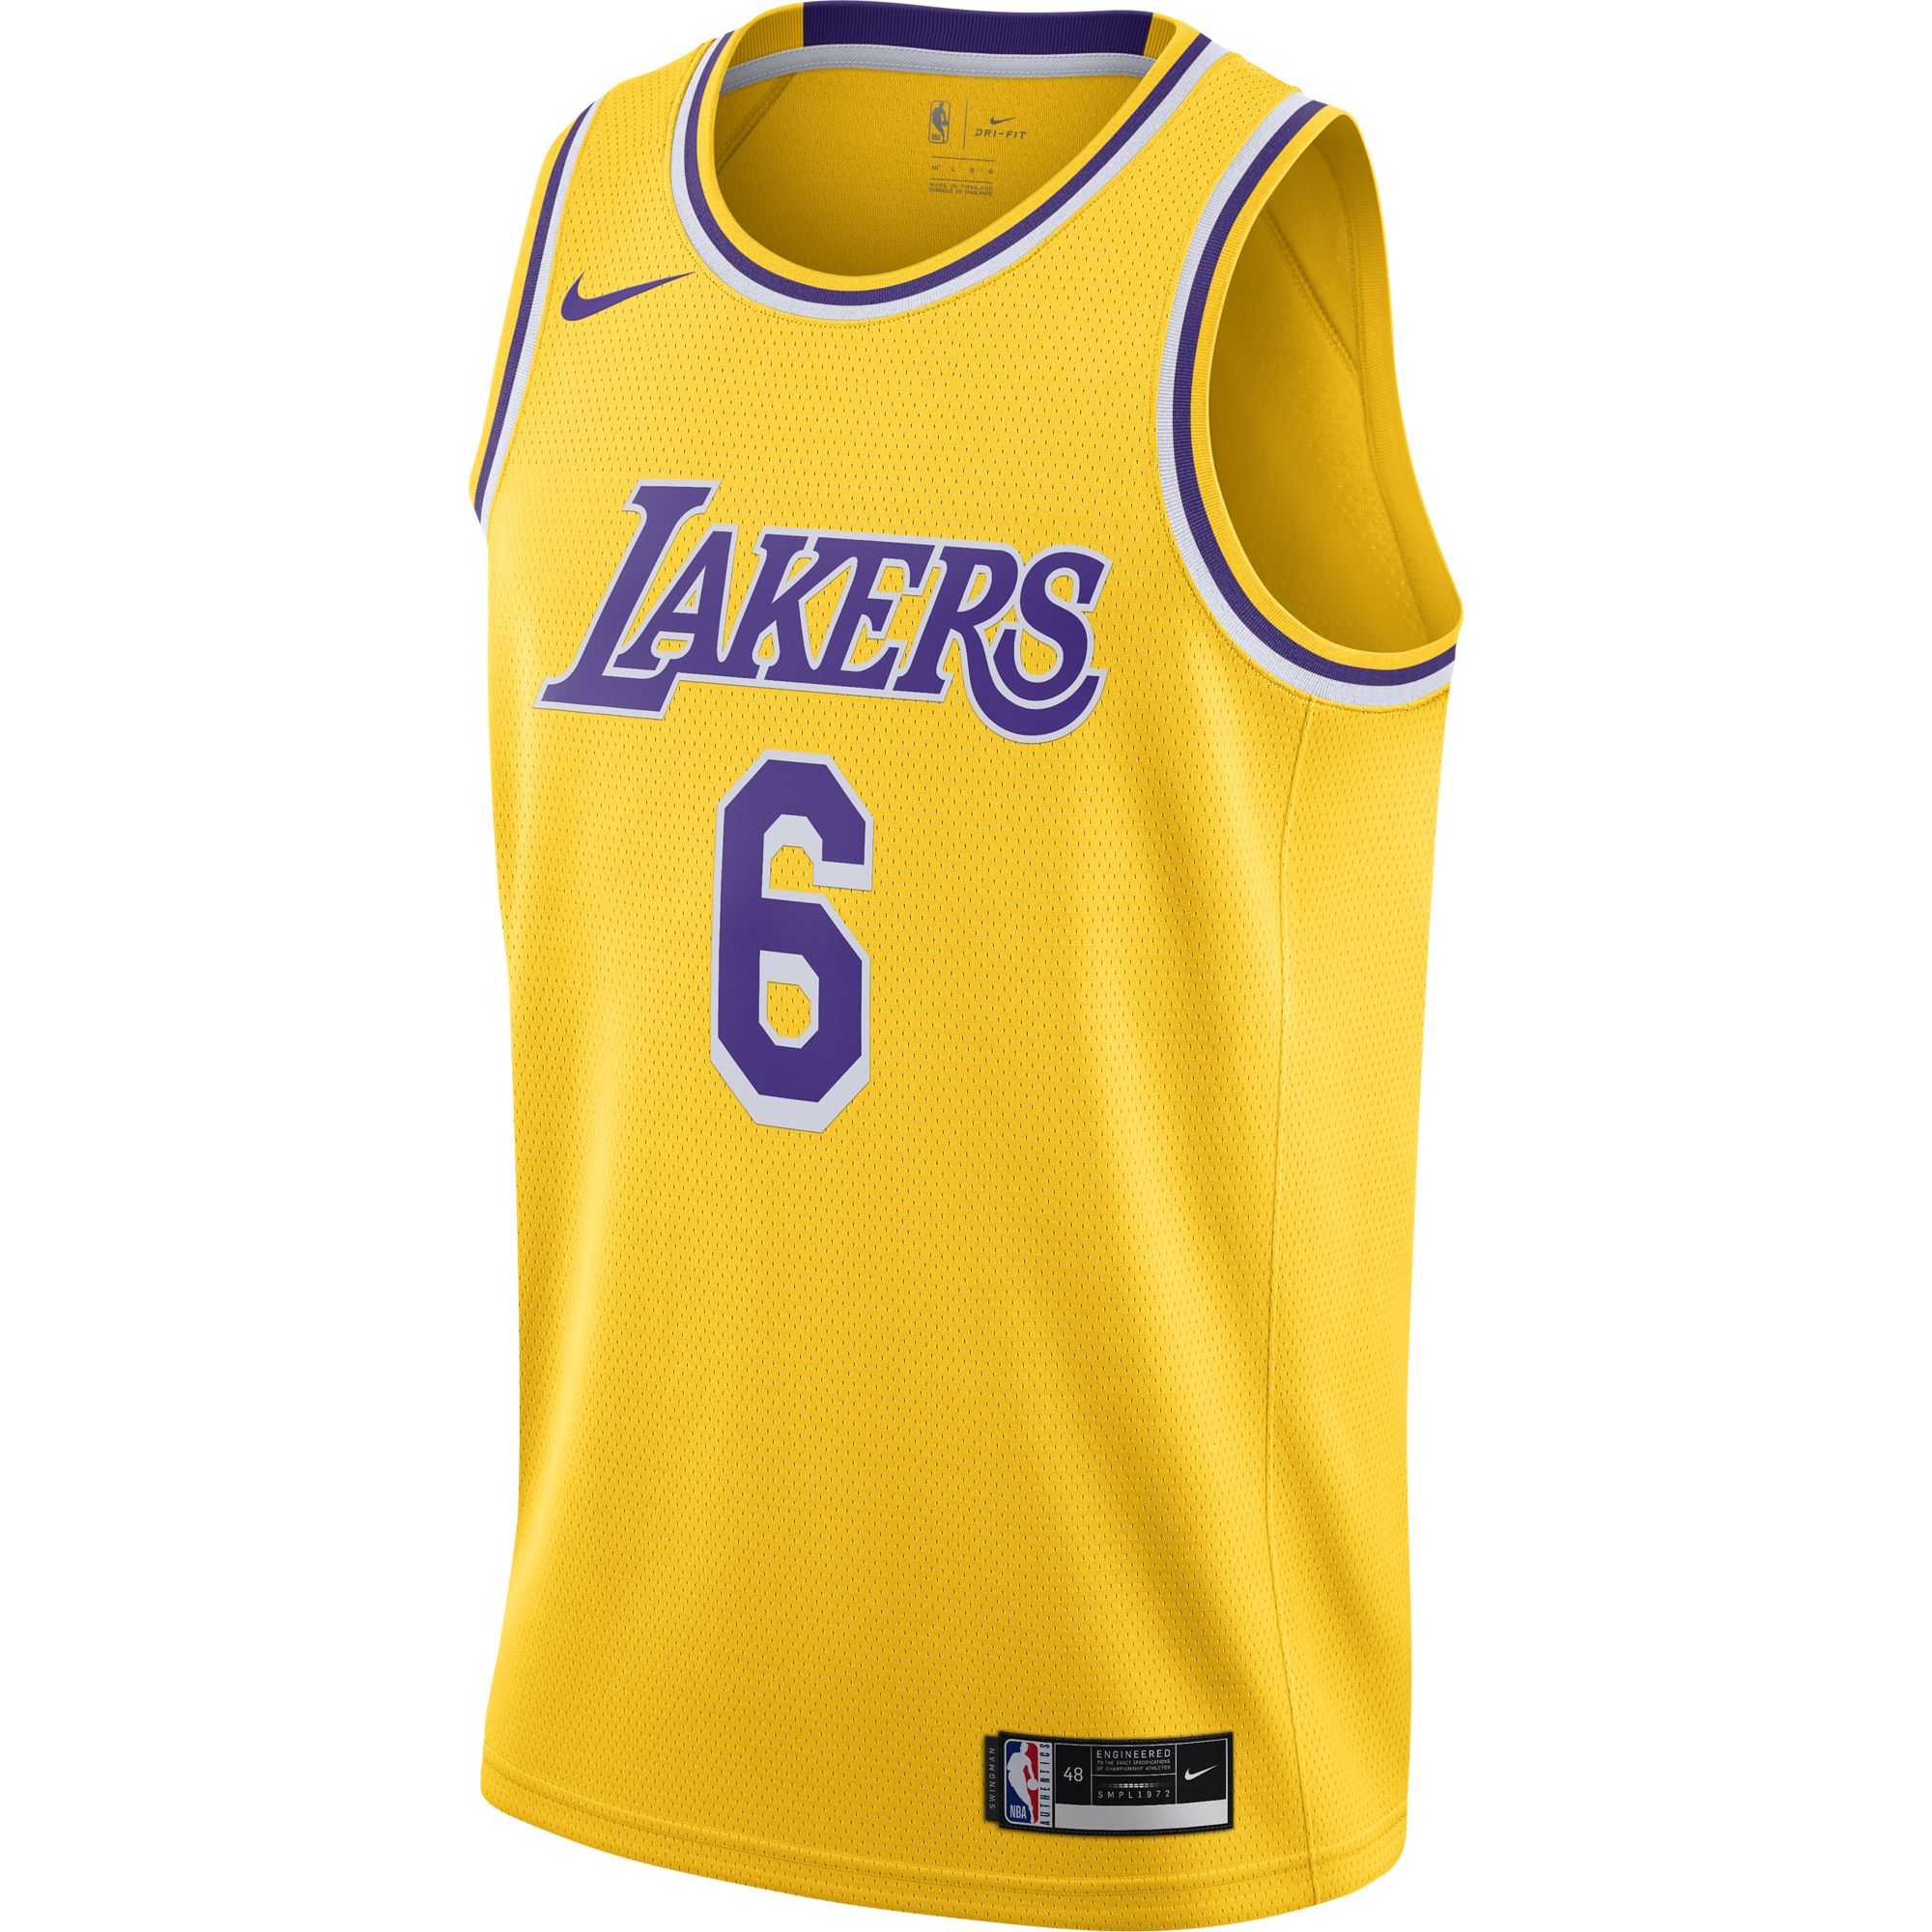 Джерси Nike Lakers Icon Edition 2020 - картинка